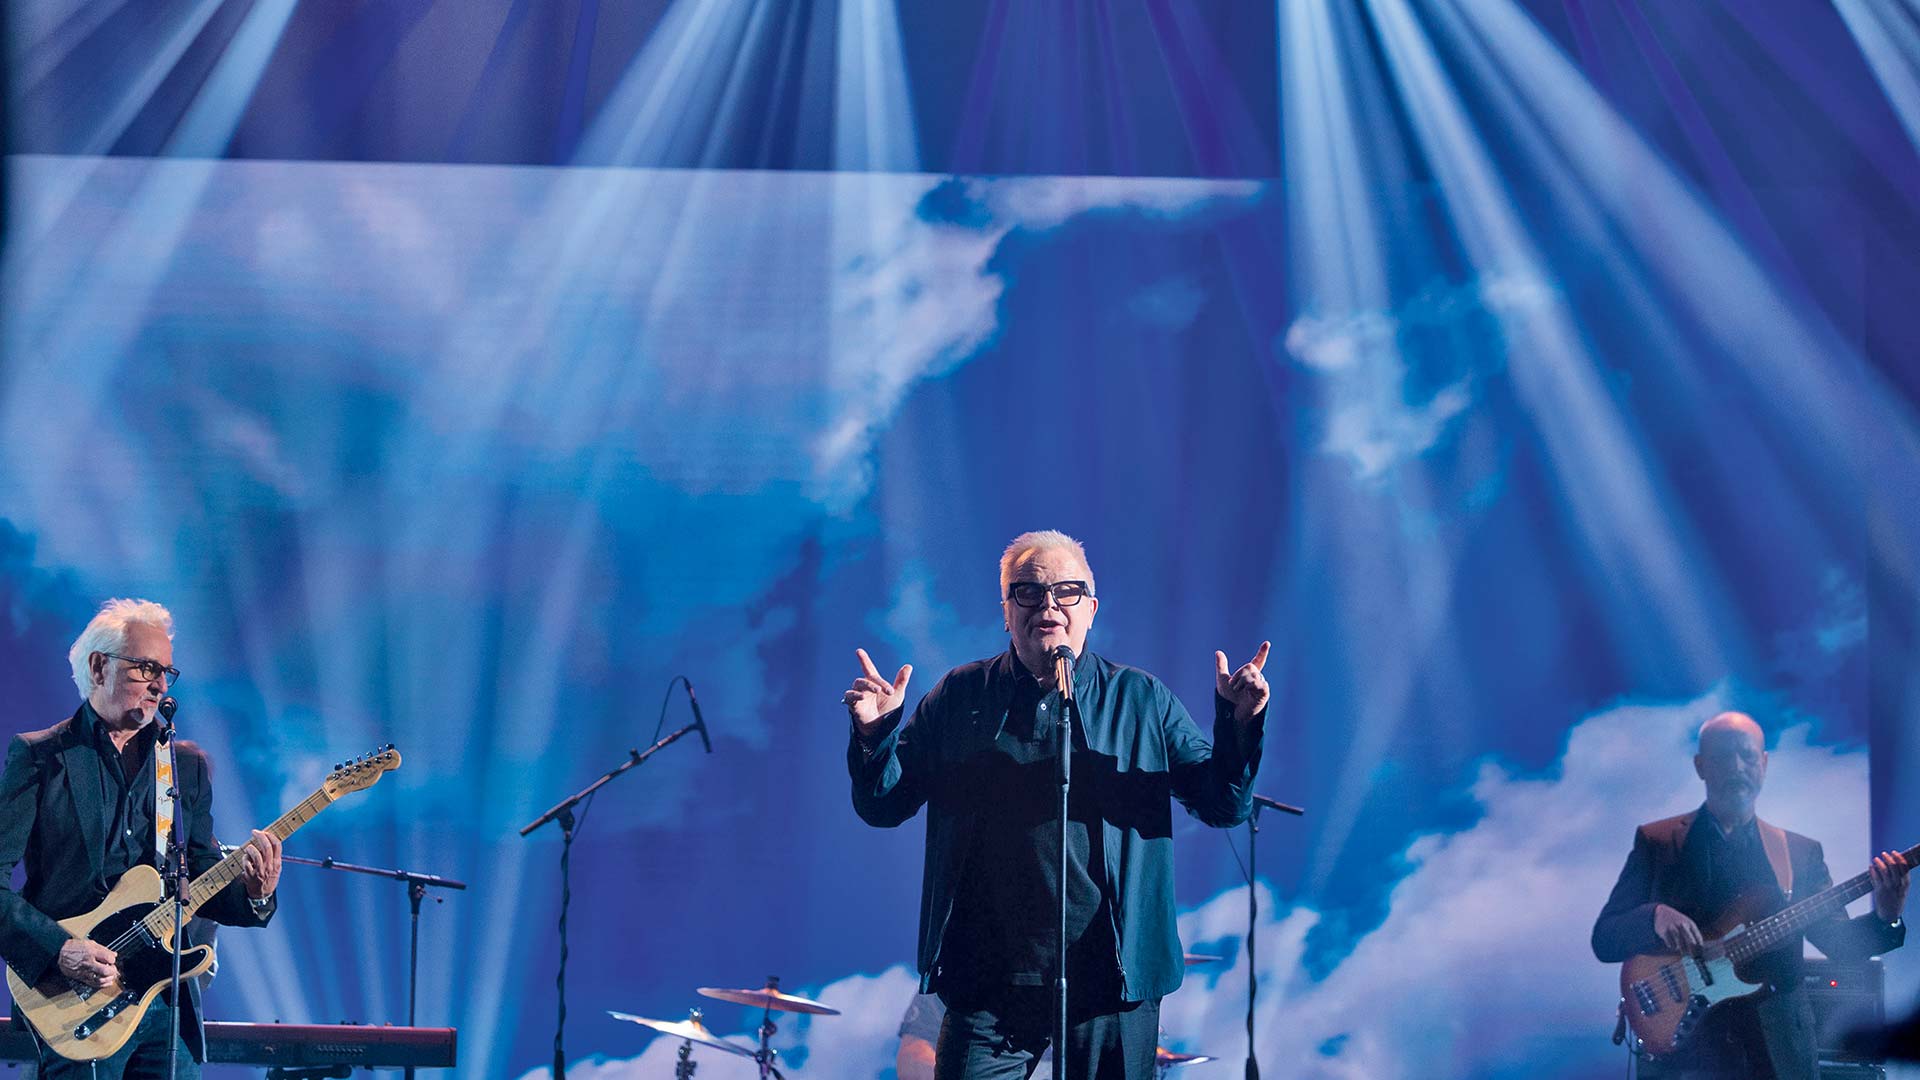 Herbert Grönemeyer bei einem Konzert 2021. Sein Lied „Der Weg“ zählt zu den beliebtesten bei Trauerfeiern.